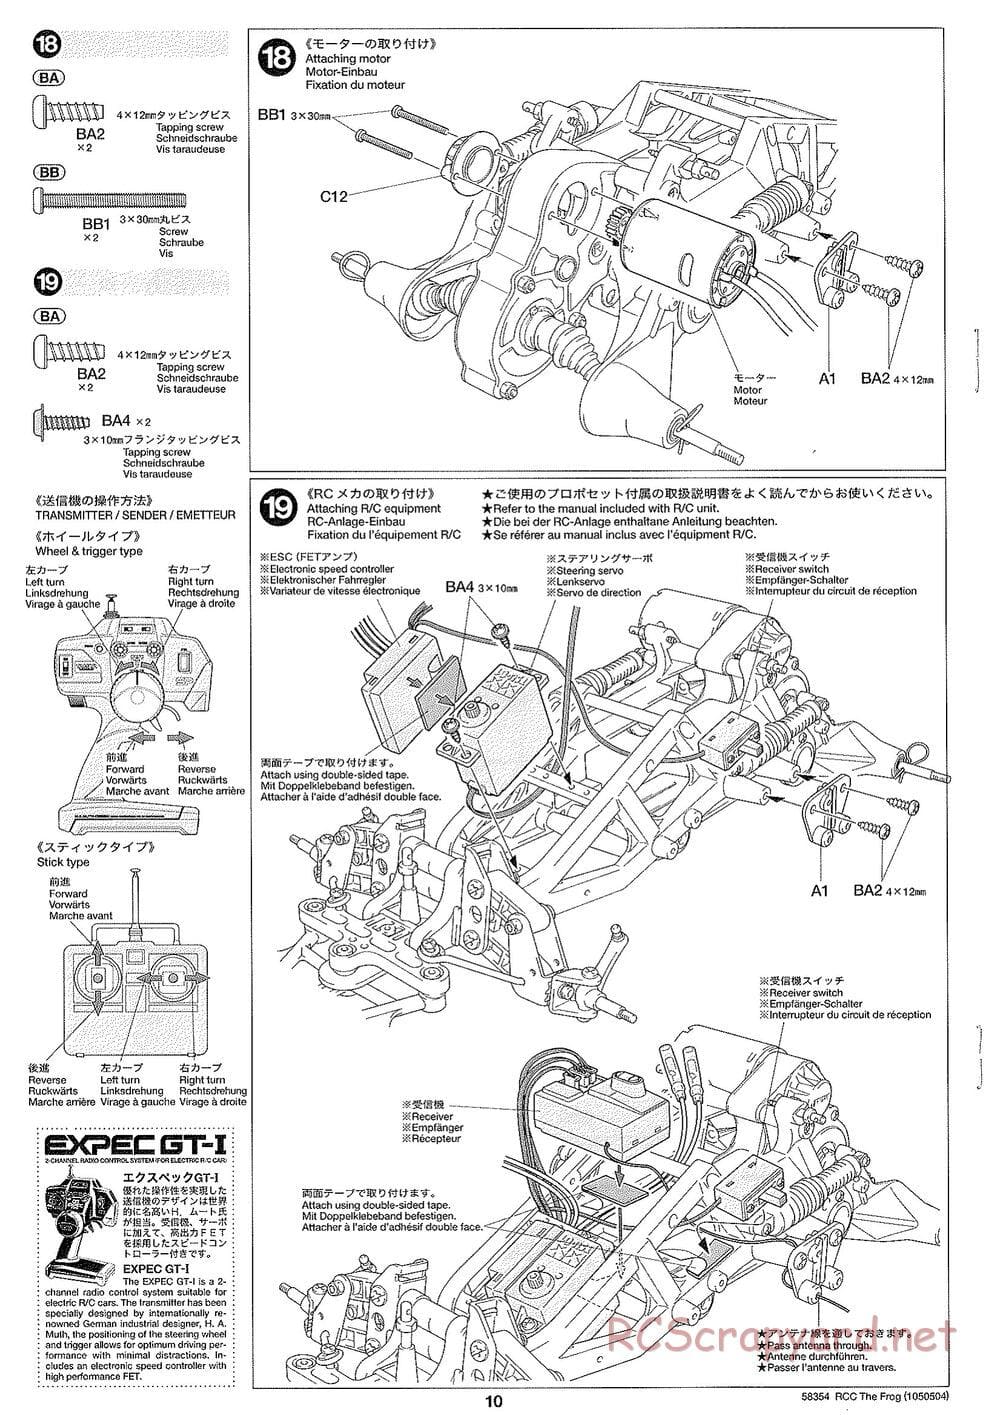 Tamiya - The Frog - 2005 - ORV Chassis - Manual - Page 10